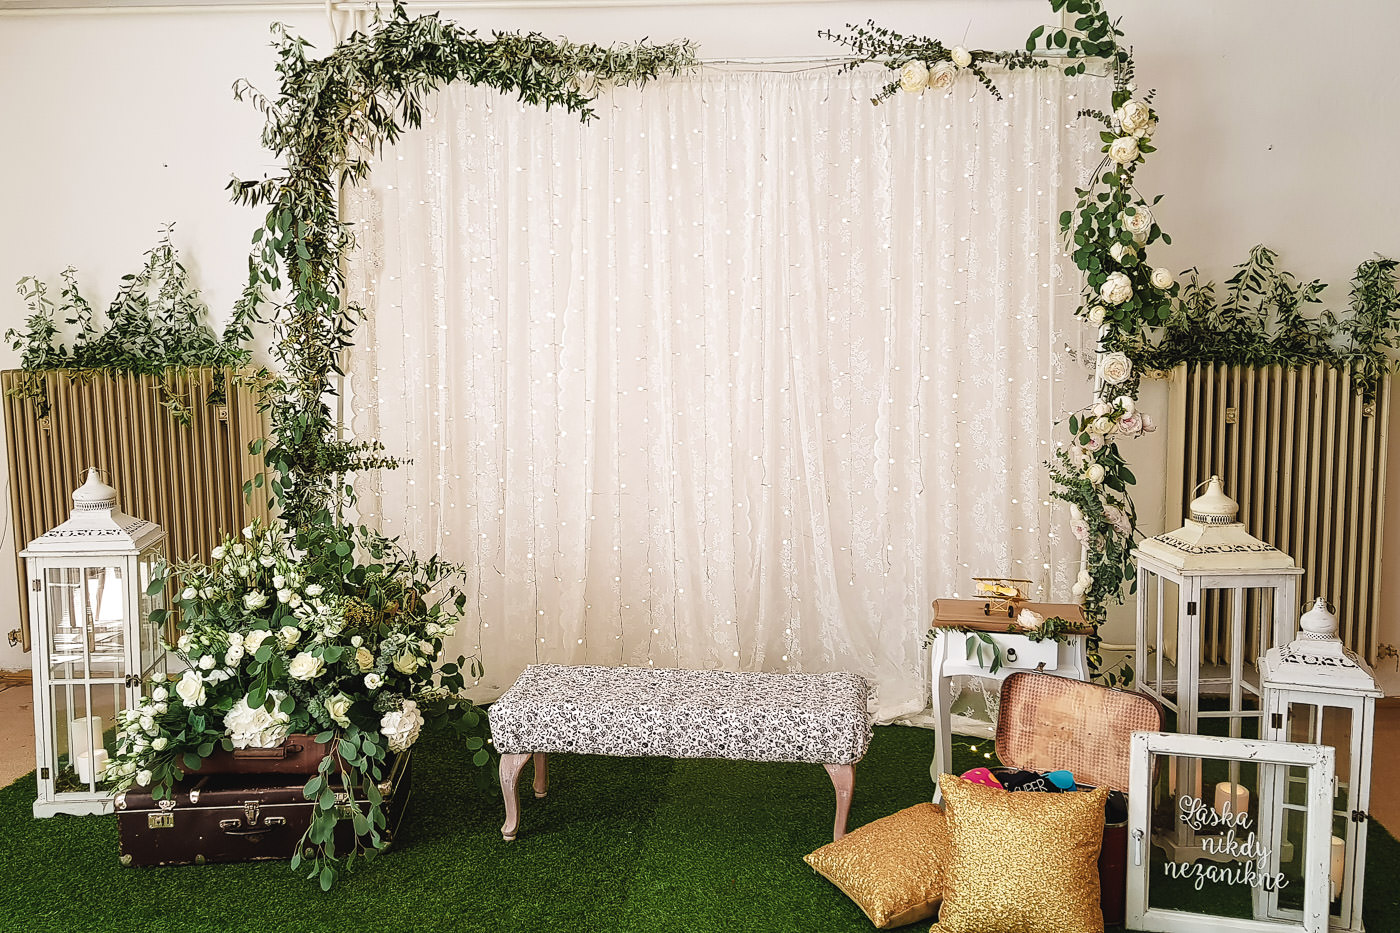 Susan&Sis decor svadobna vyzdoba – dekorovanie- white&green, greenery svadobna vyzdoba, bielo zelena svadba, svadobny fotokutik